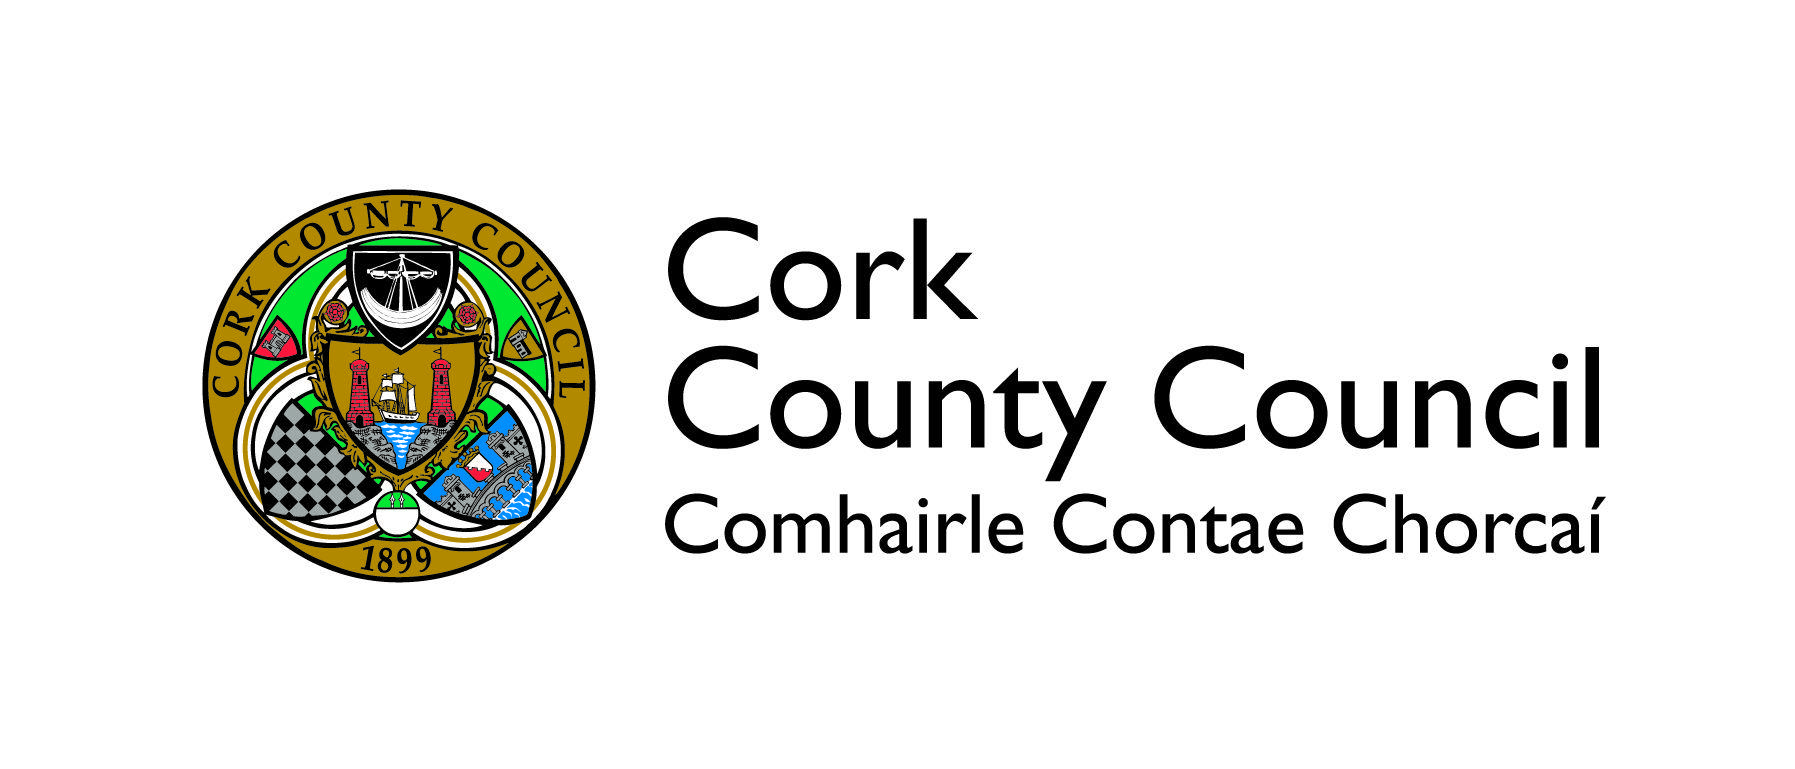 Council Logo - cork-county-council-logo - IPF